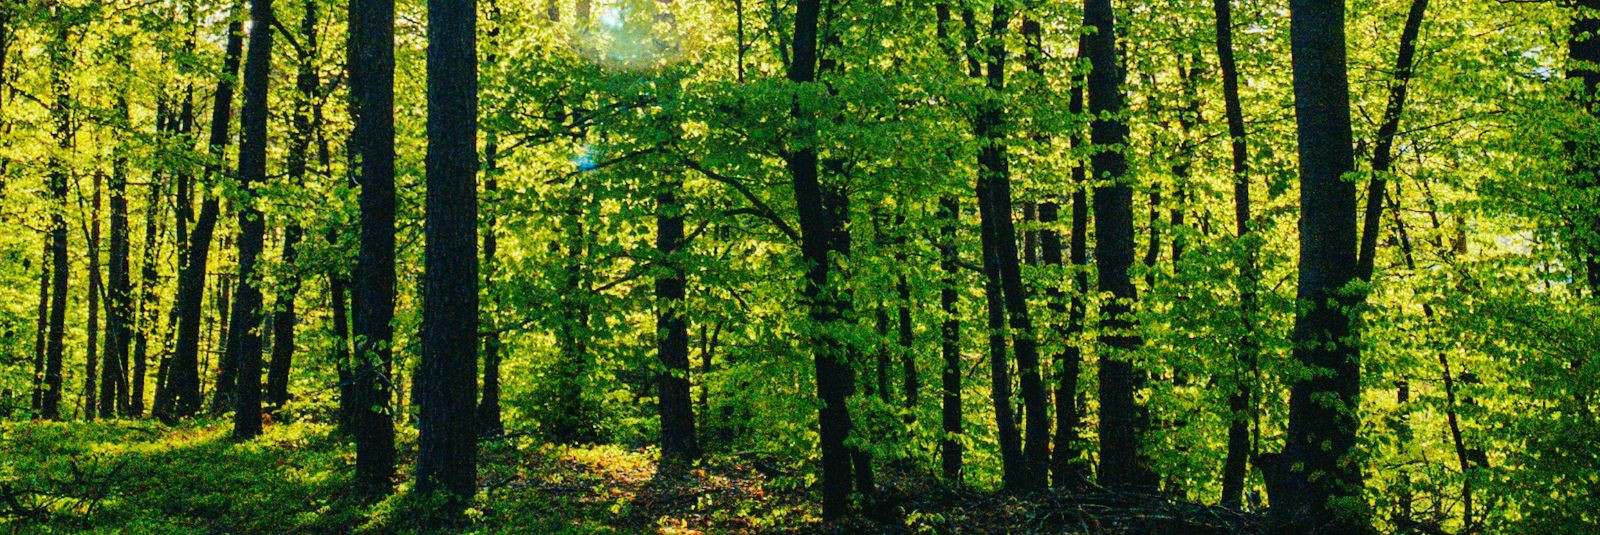 Metsad on planeedi üks olulisemaid loodusvarasid, mis mängivad võtmerolli ökosüsteemide toimimisel, kliimamuutuste leevendamisel ja bioloogilise mitmekesisuse s